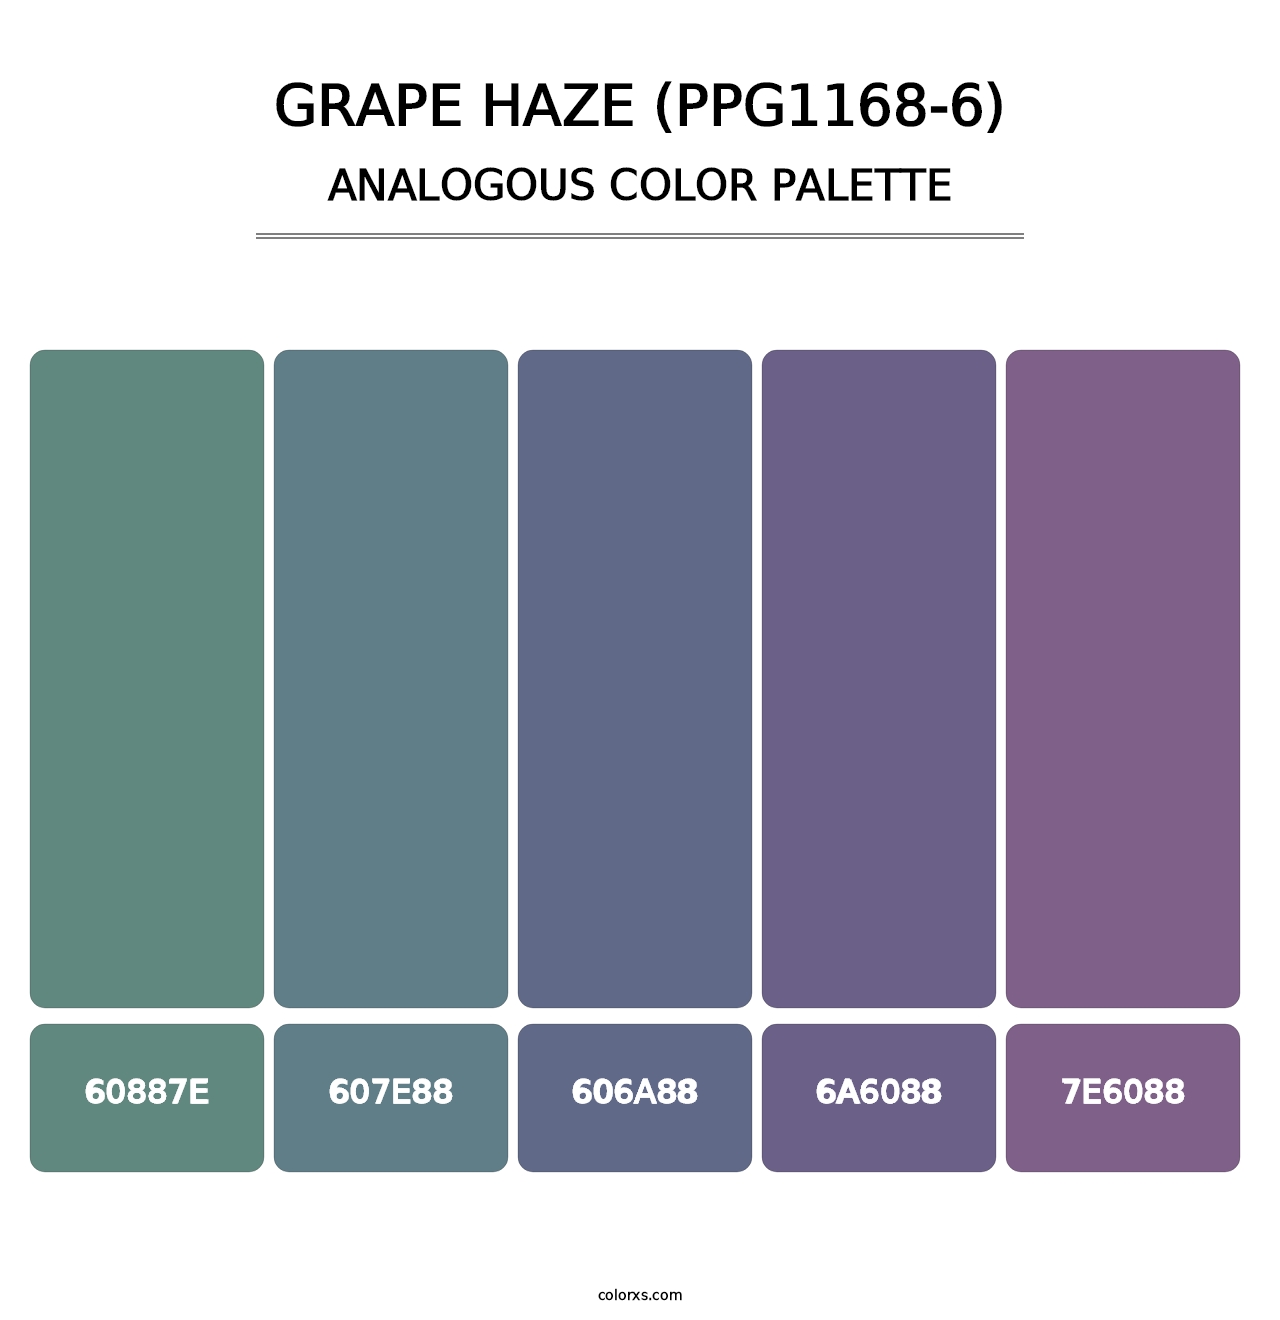 Grape Haze (PPG1168-6) - Analogous Color Palette